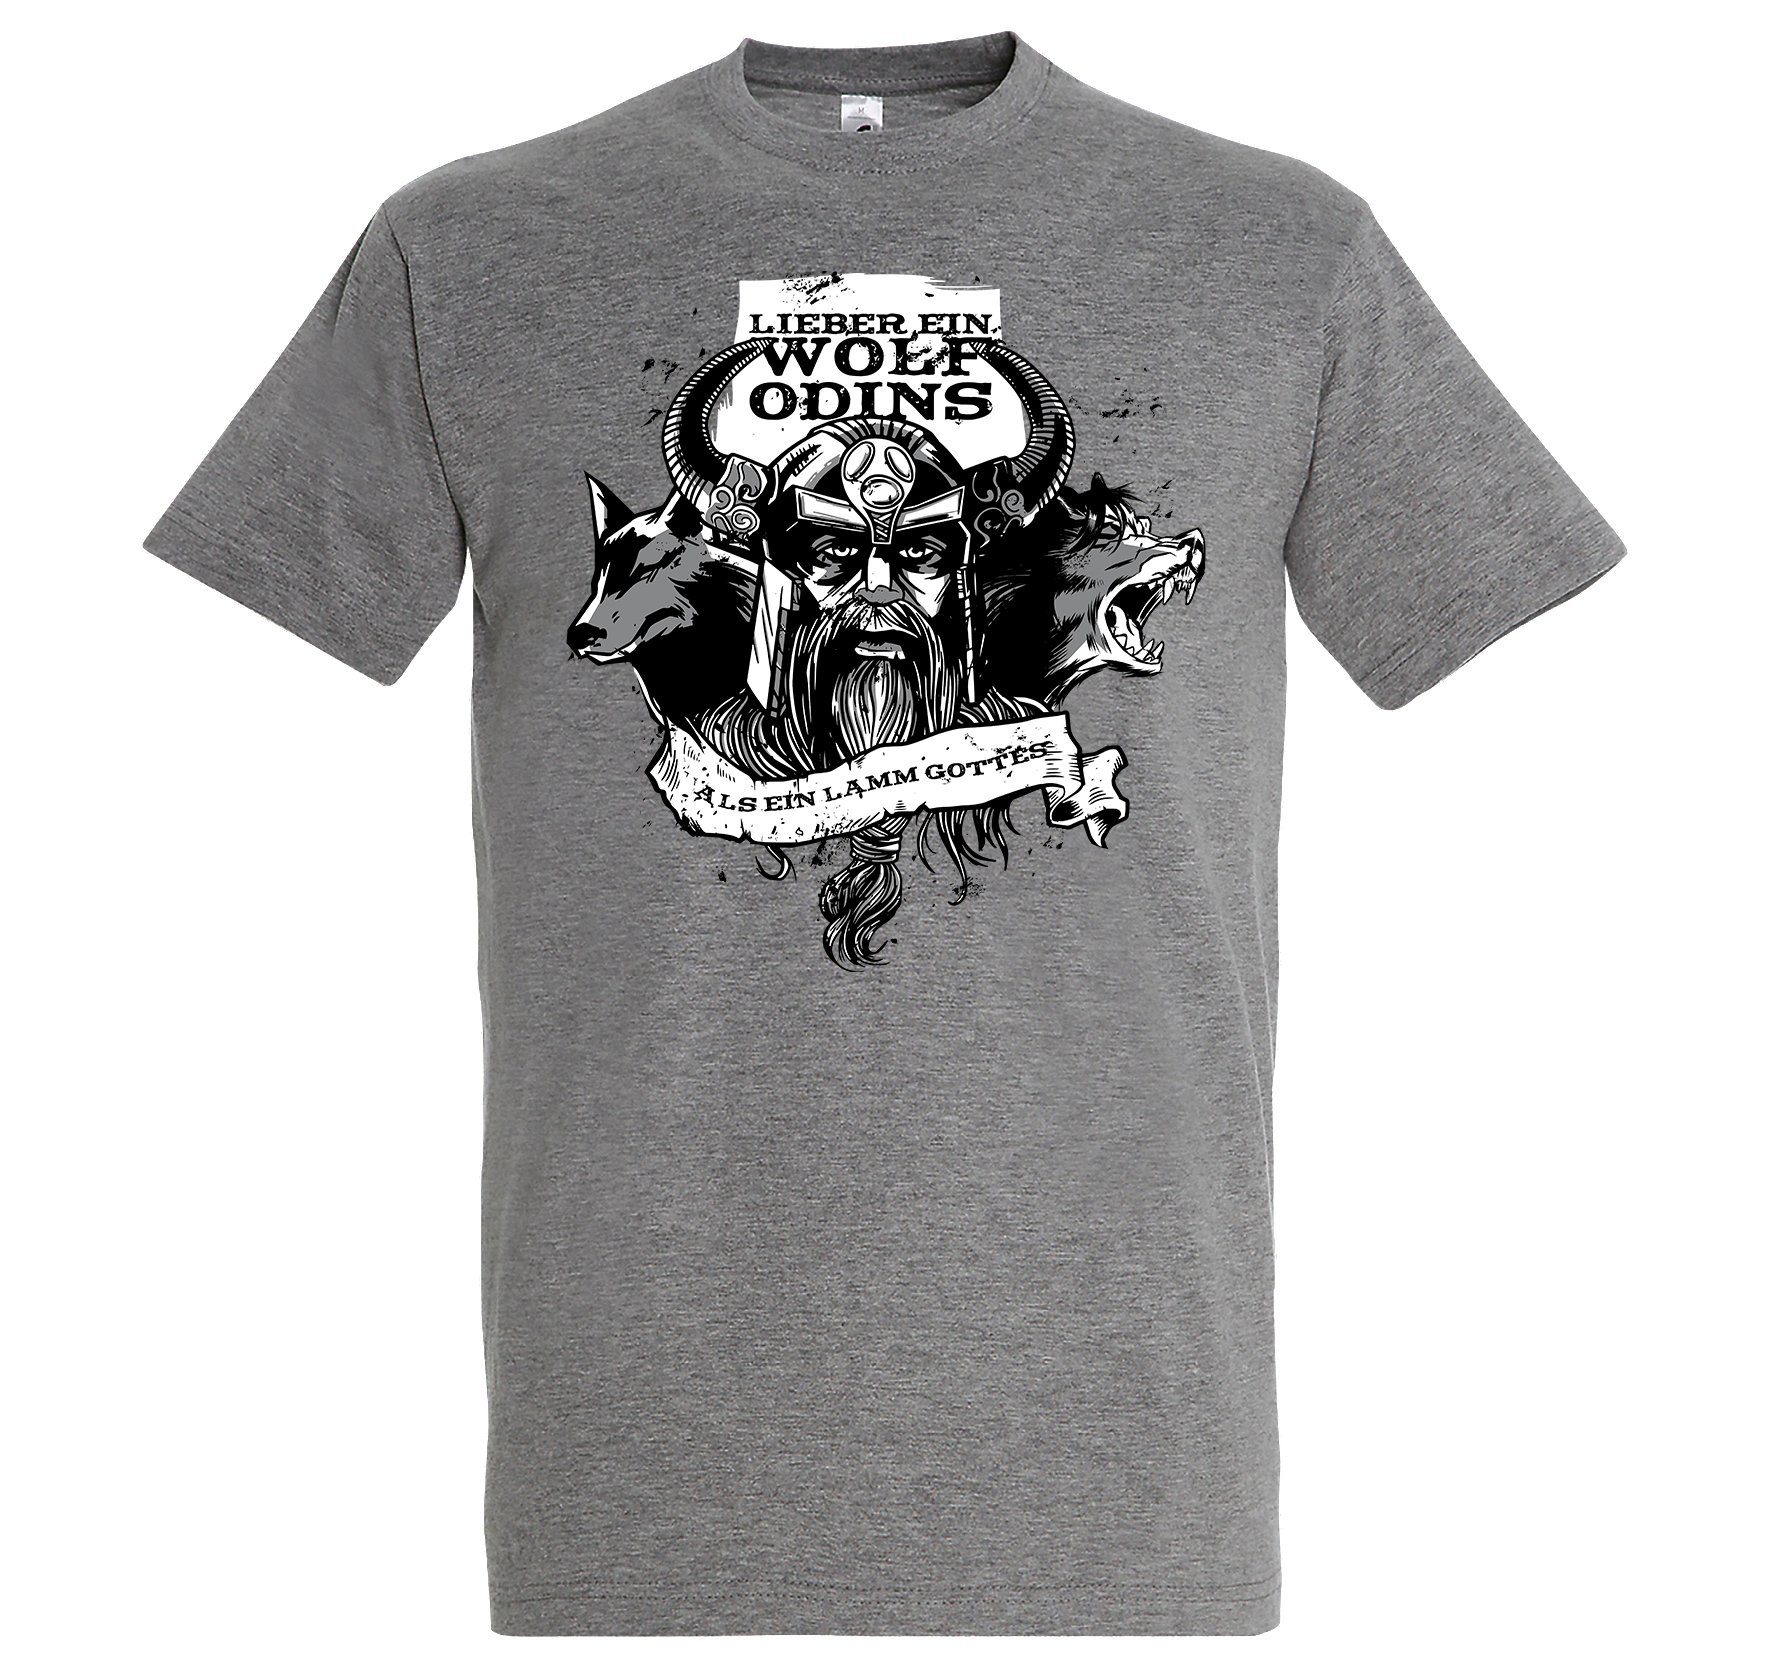 Youth Designz Wolf ein "Lieber mit T-Shirt Print-Shirt Grau Odins" Herren lustigem Spruch